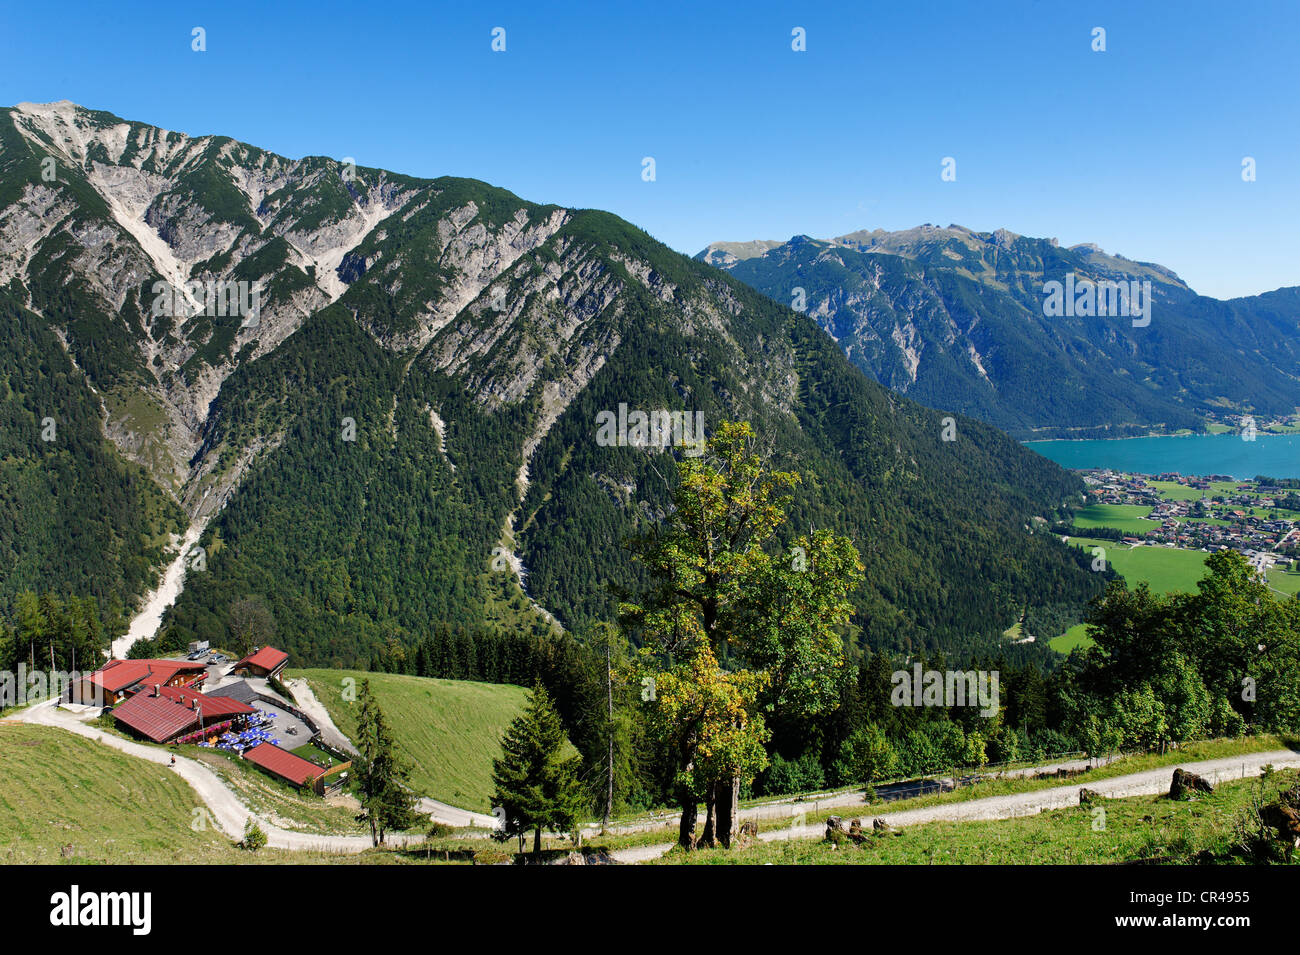 Feilalm alp on Feilkopf mountain, near Pertisau on lake Achensee, Karwendel mountain range, Tyrol, Austria, Europe Stock Photo